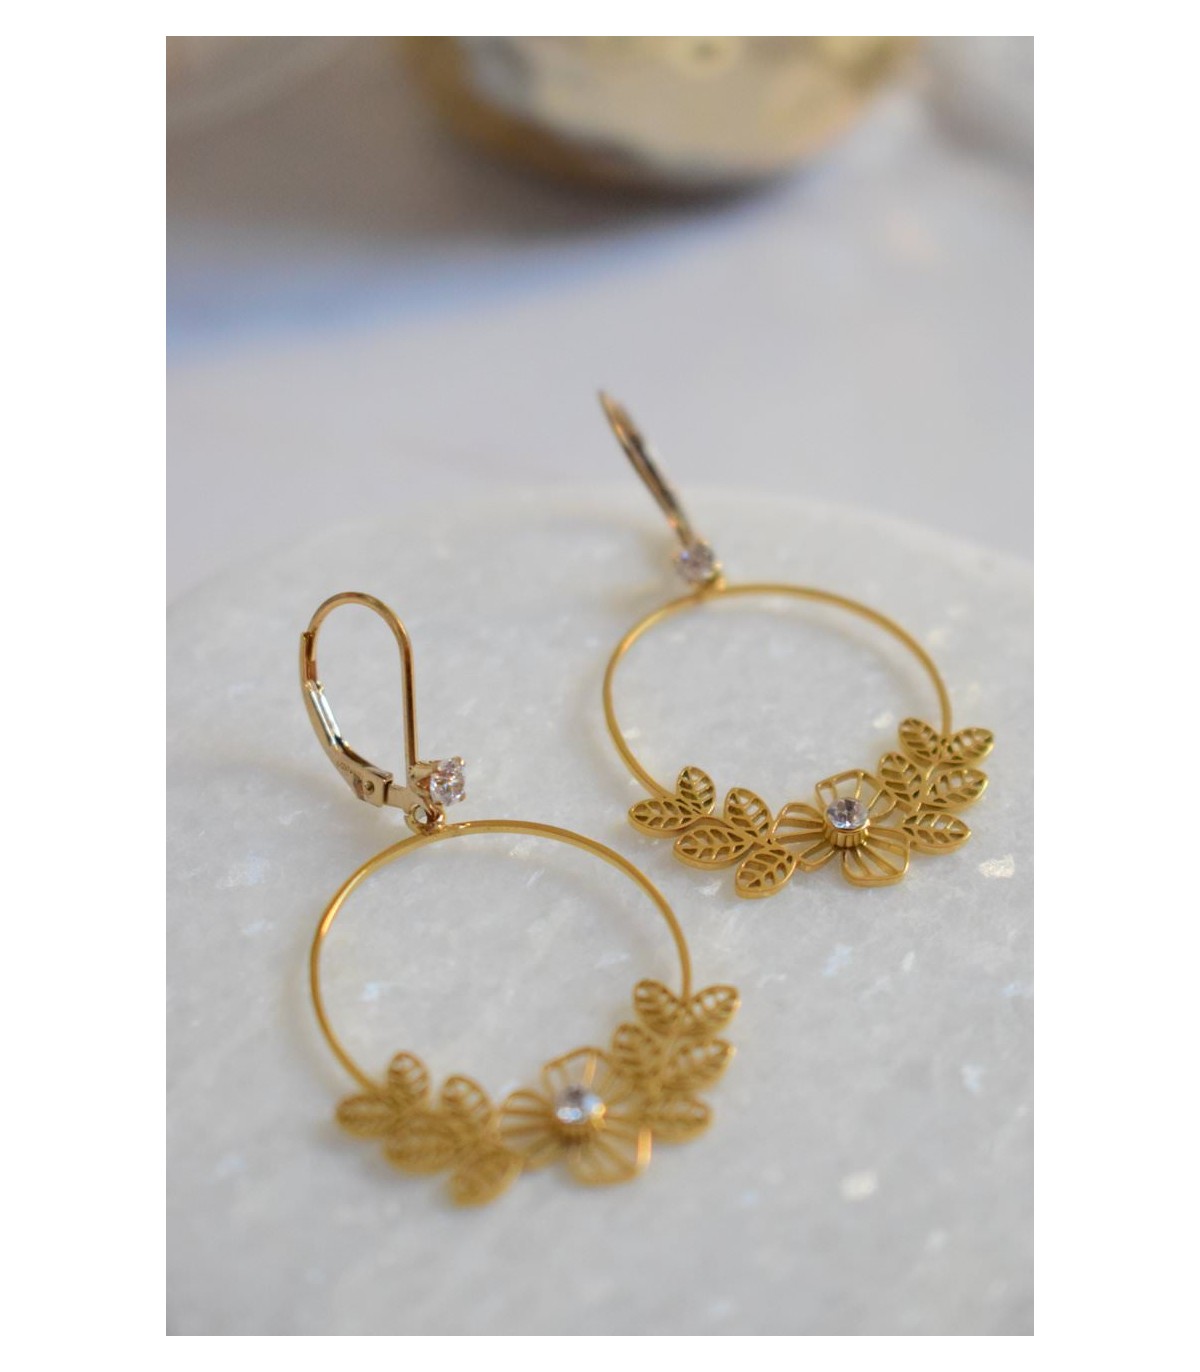 boucles d'oreilles avec motif floral et strass pour la mariée romantique champetre